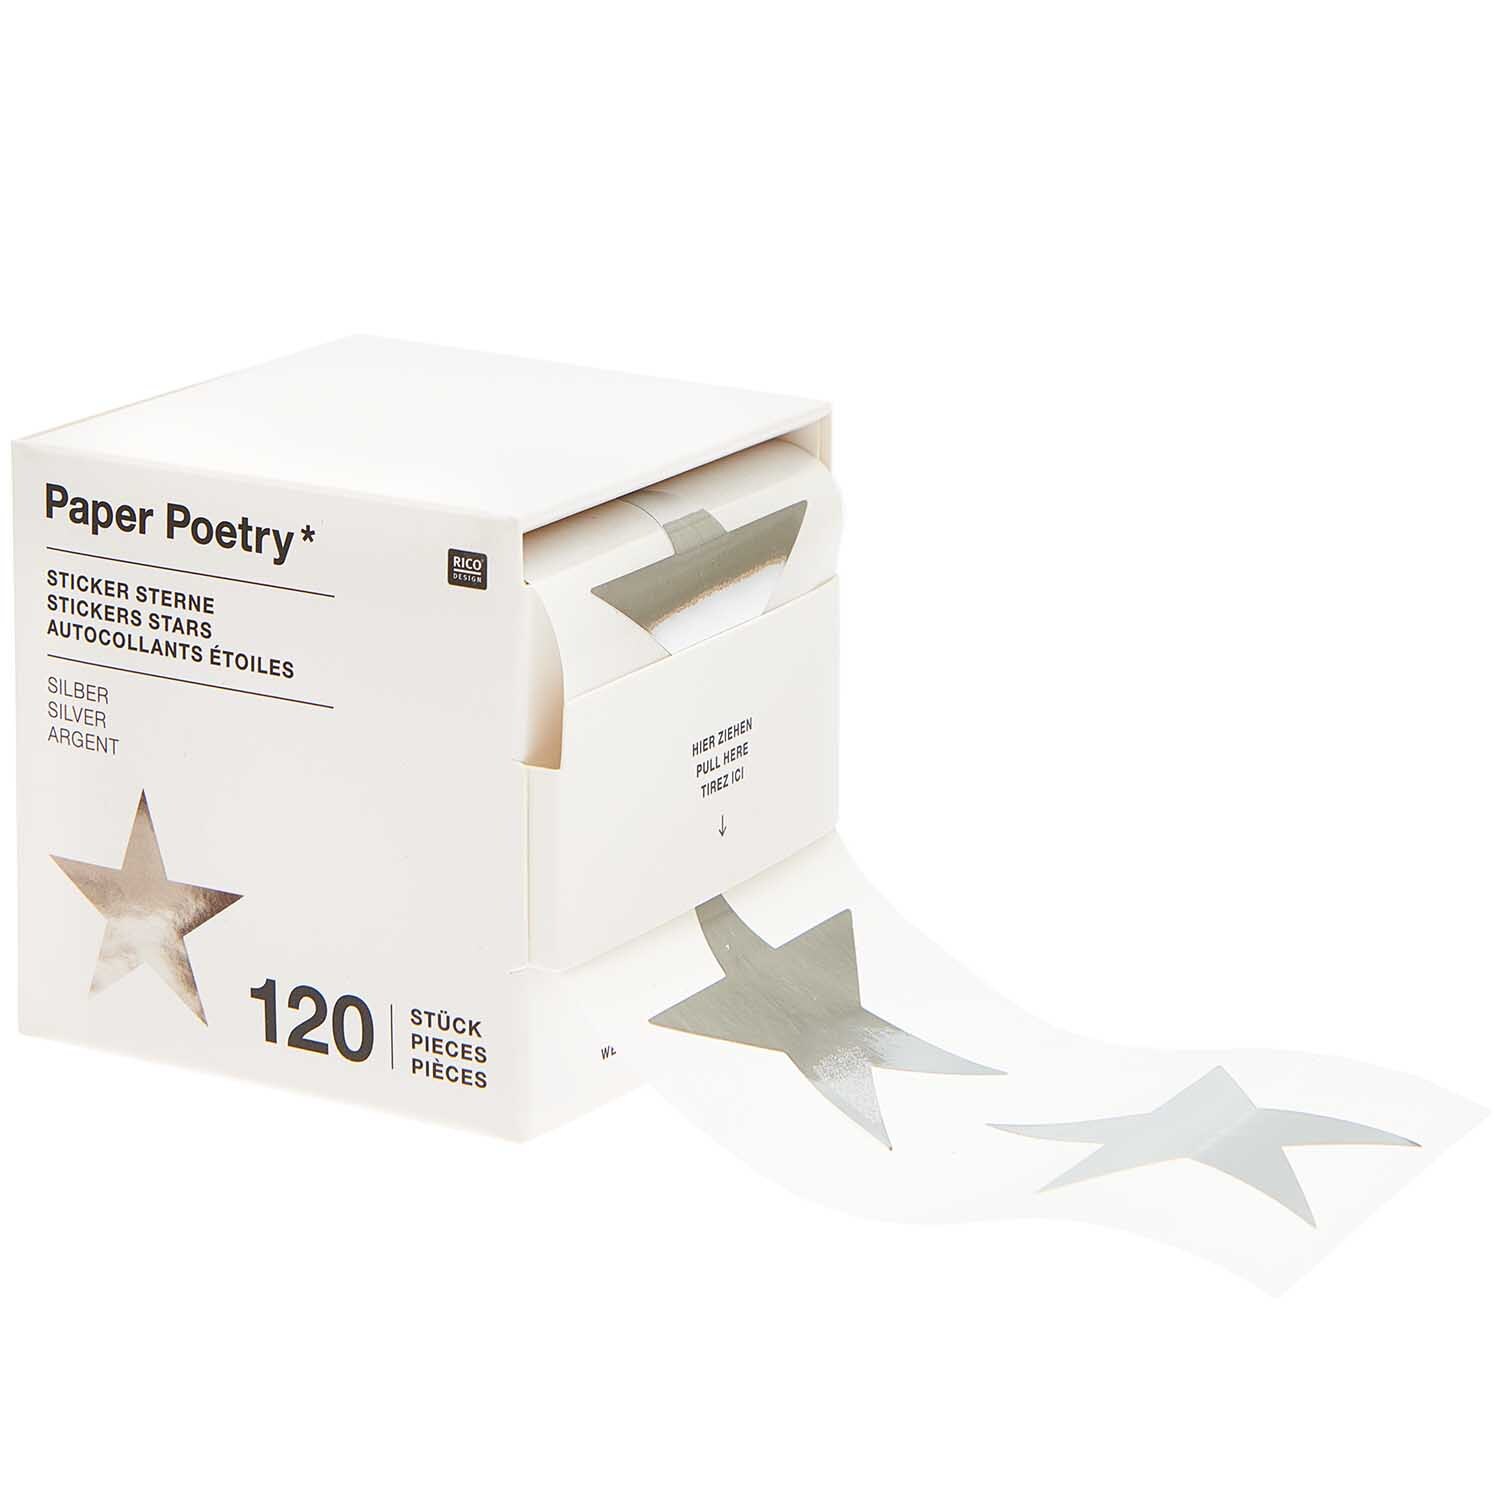 Paper Poetry Sticker Sterne 5cm 120 Stück auf der Rolle Hot Foil